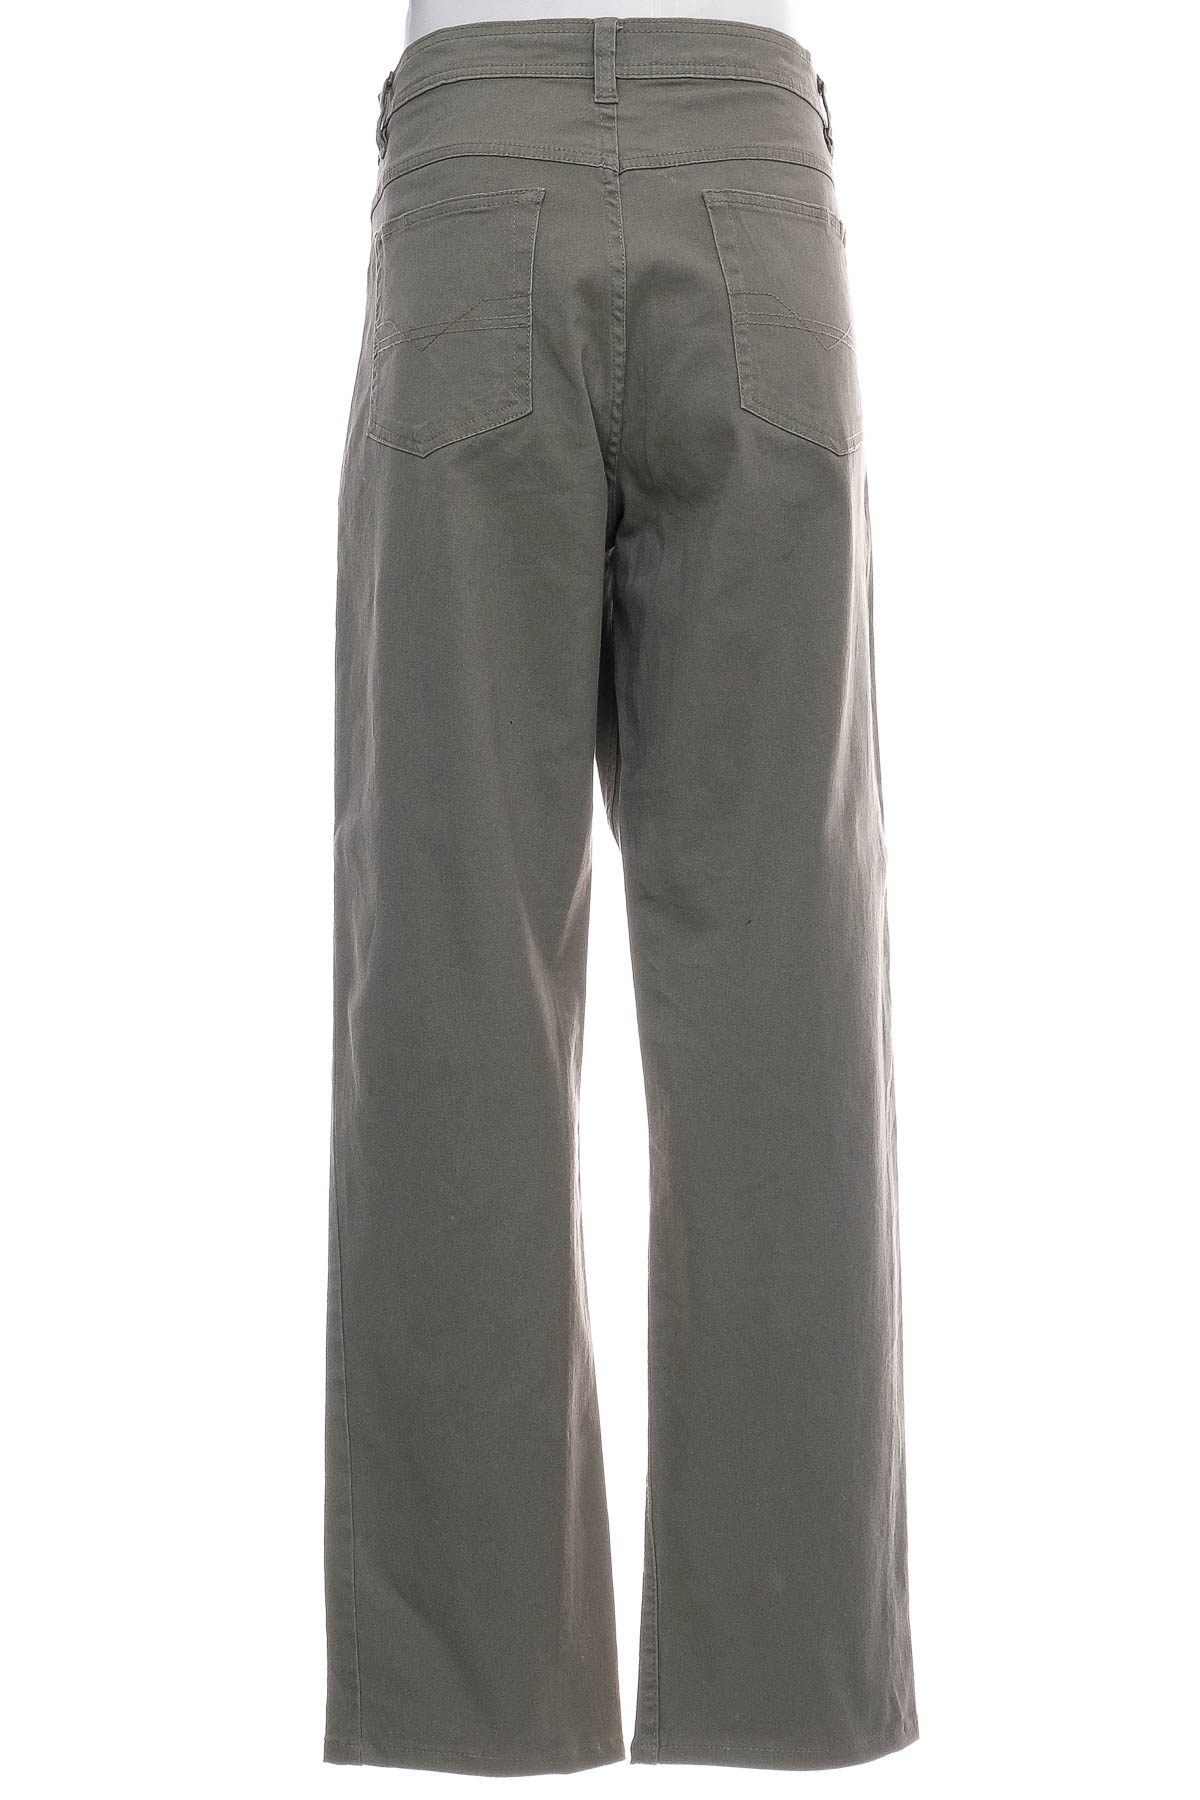 Pantalon pentru bărbați - Camargue - 1